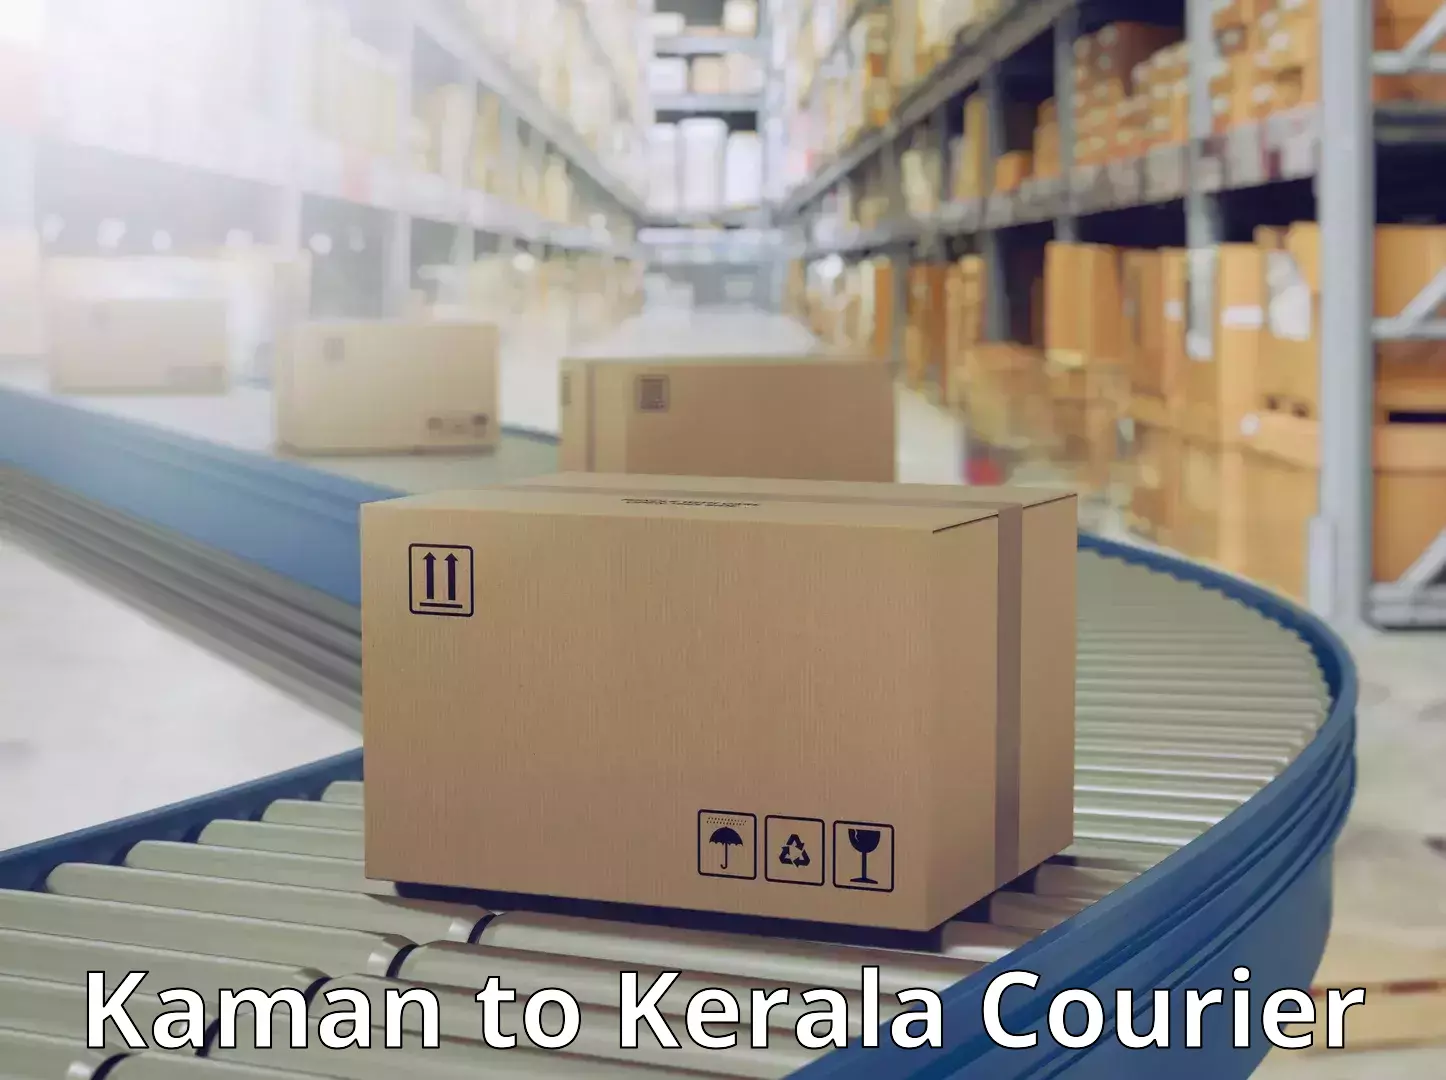 Urgent courier needs Kaman to IIT Palakkad